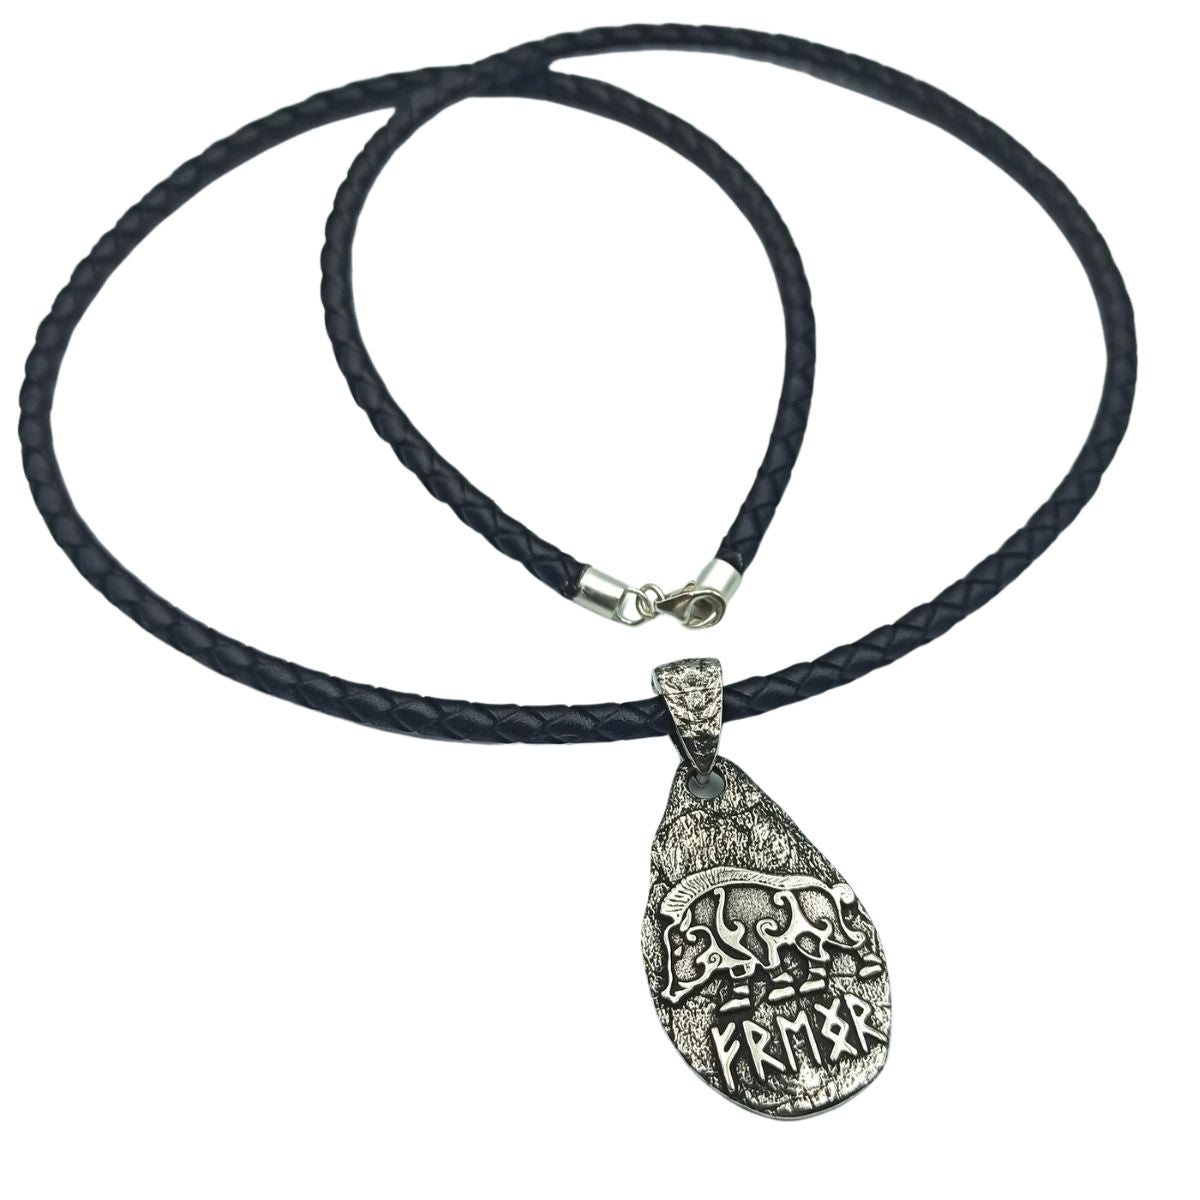 Freyr boar silver pendant